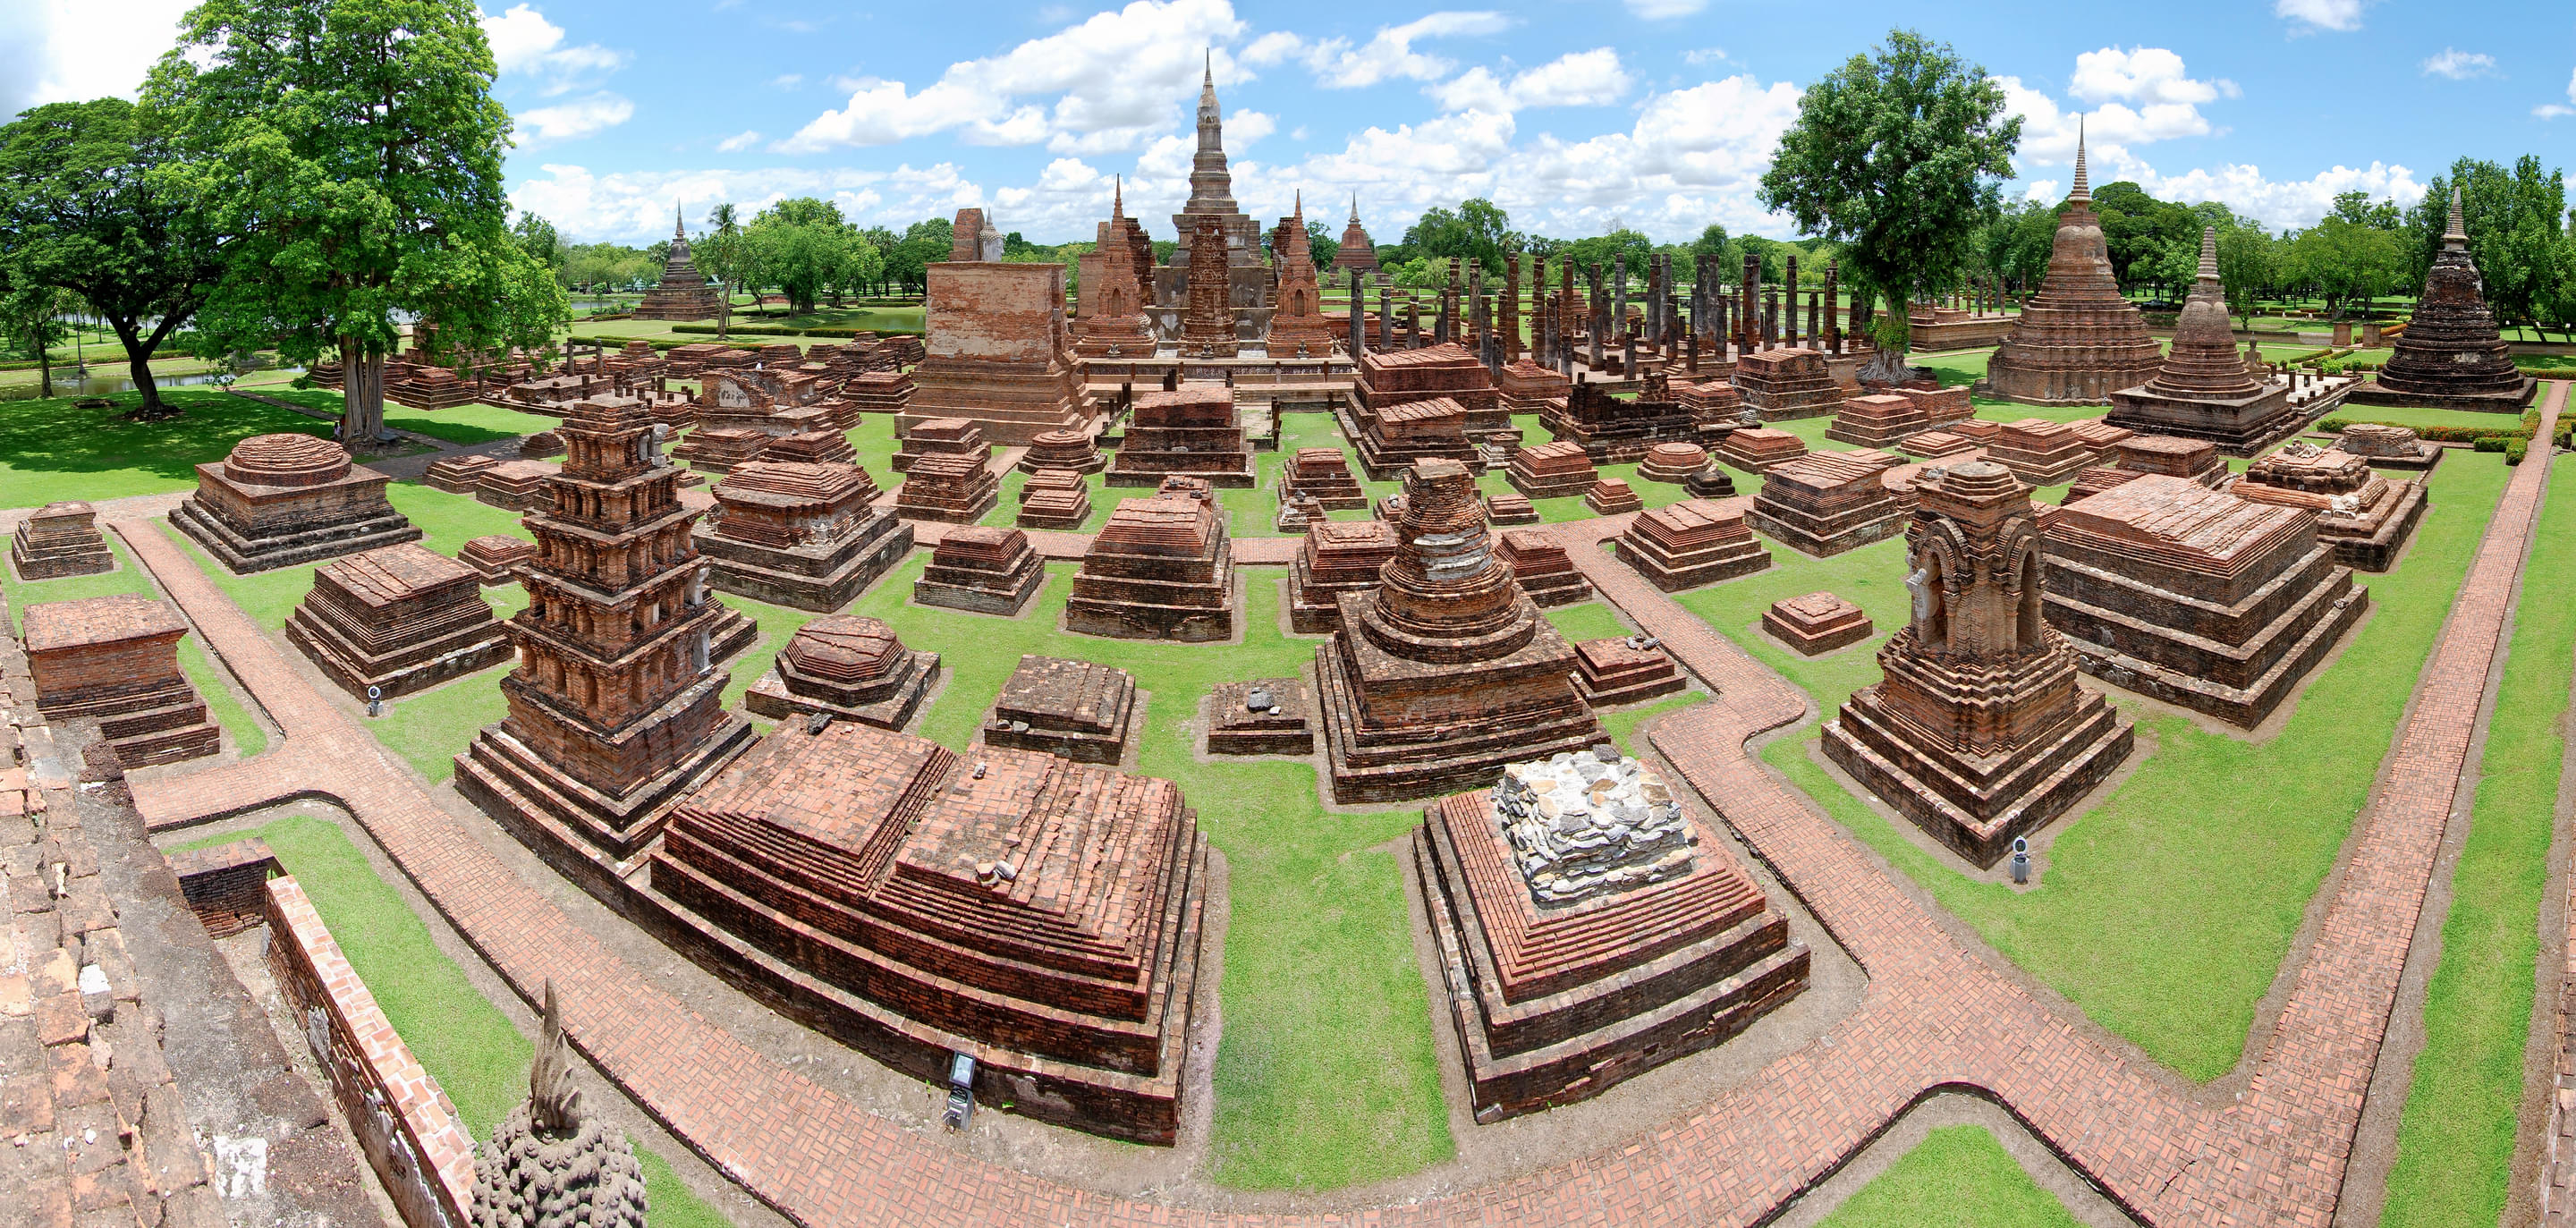 Sukhothai Historical Park Overview